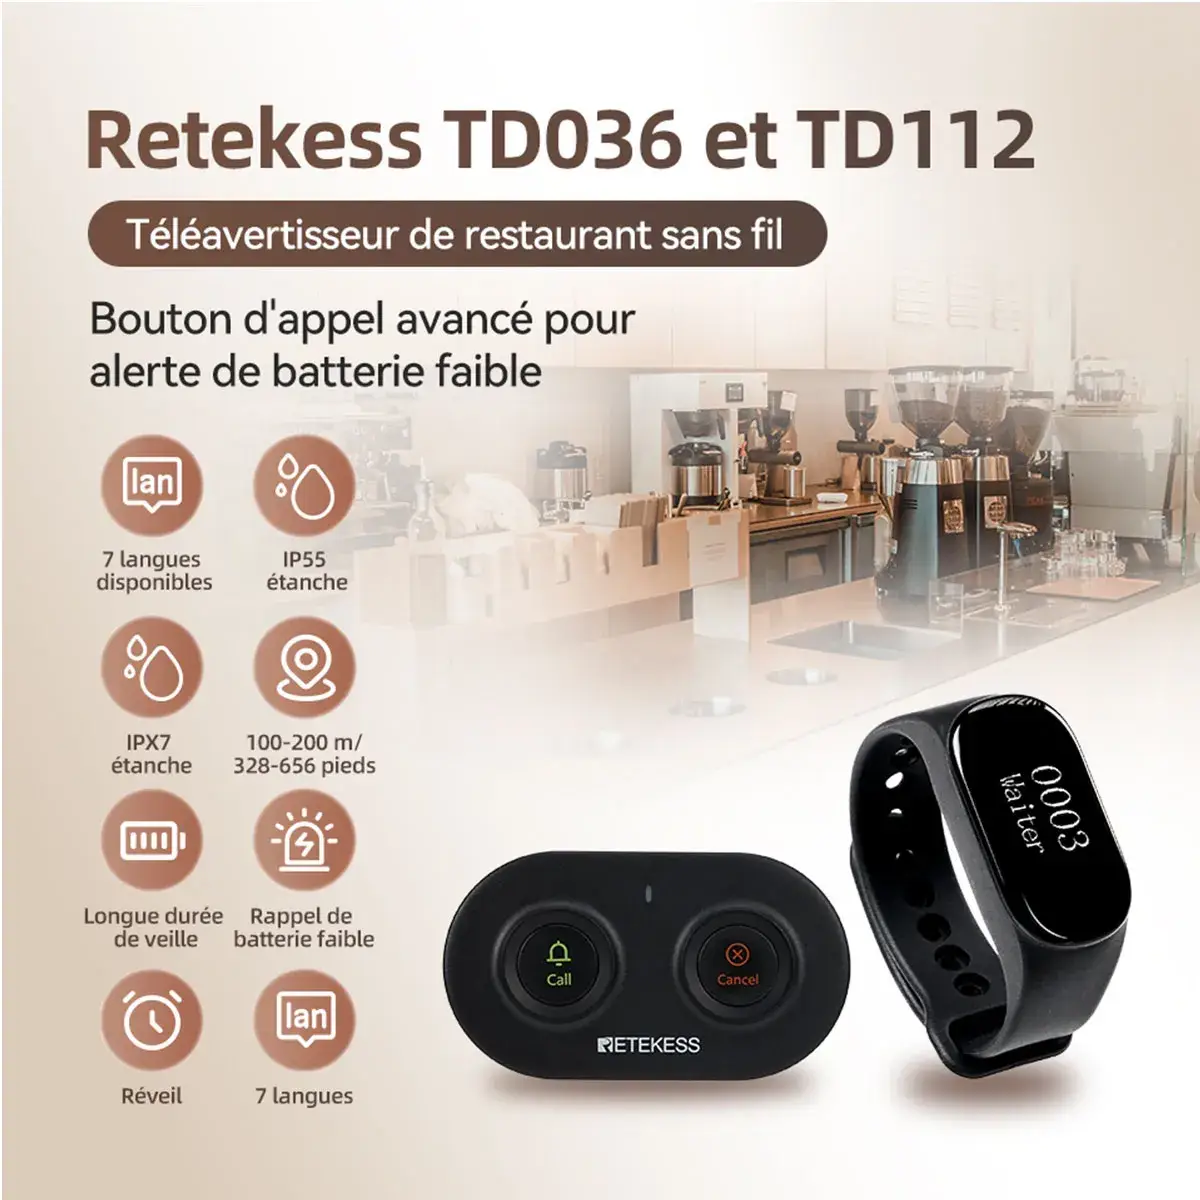 Retekess TD112 Bipeur Serveur IPX7 Étanche Montre Bipeur et Bouton D'appel TD036 Pour Restaurants, Cafés, Boulangeries